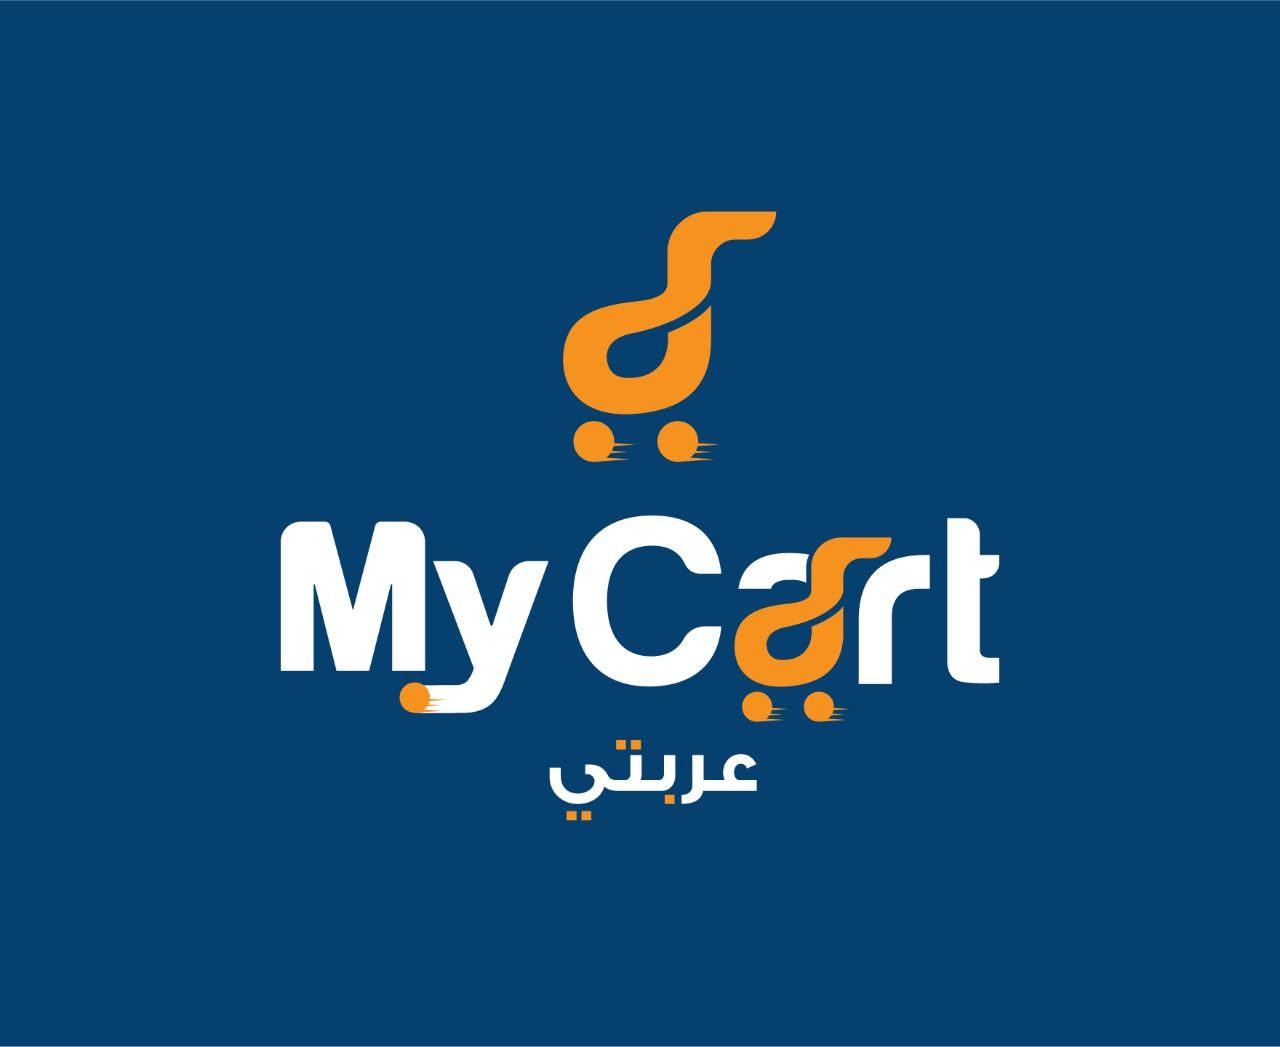 Mycart